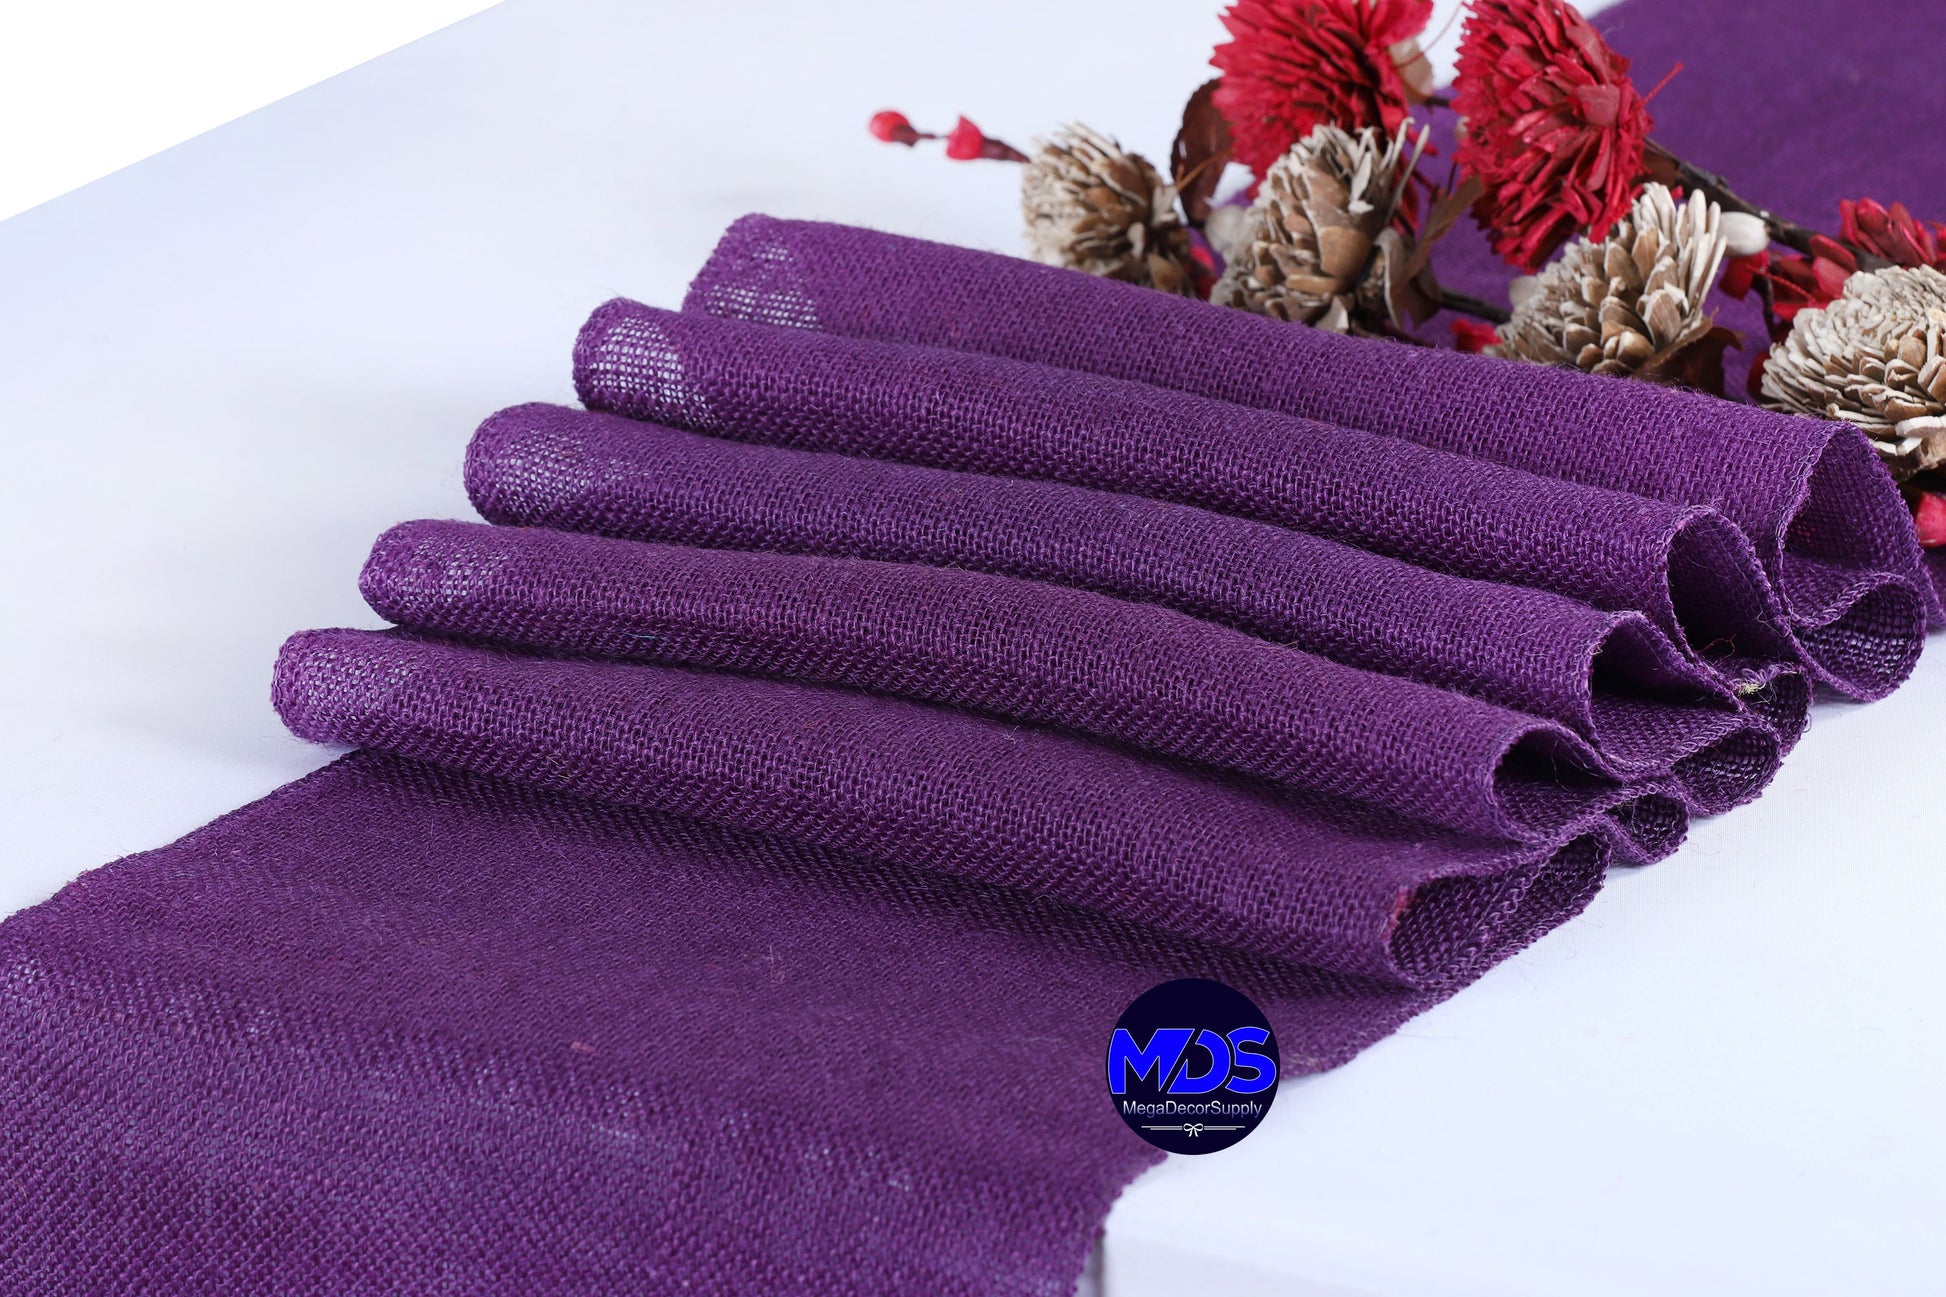 Cadbury Purple,cebf91ac-f505-4cf7-bac4-2d57466ab94e